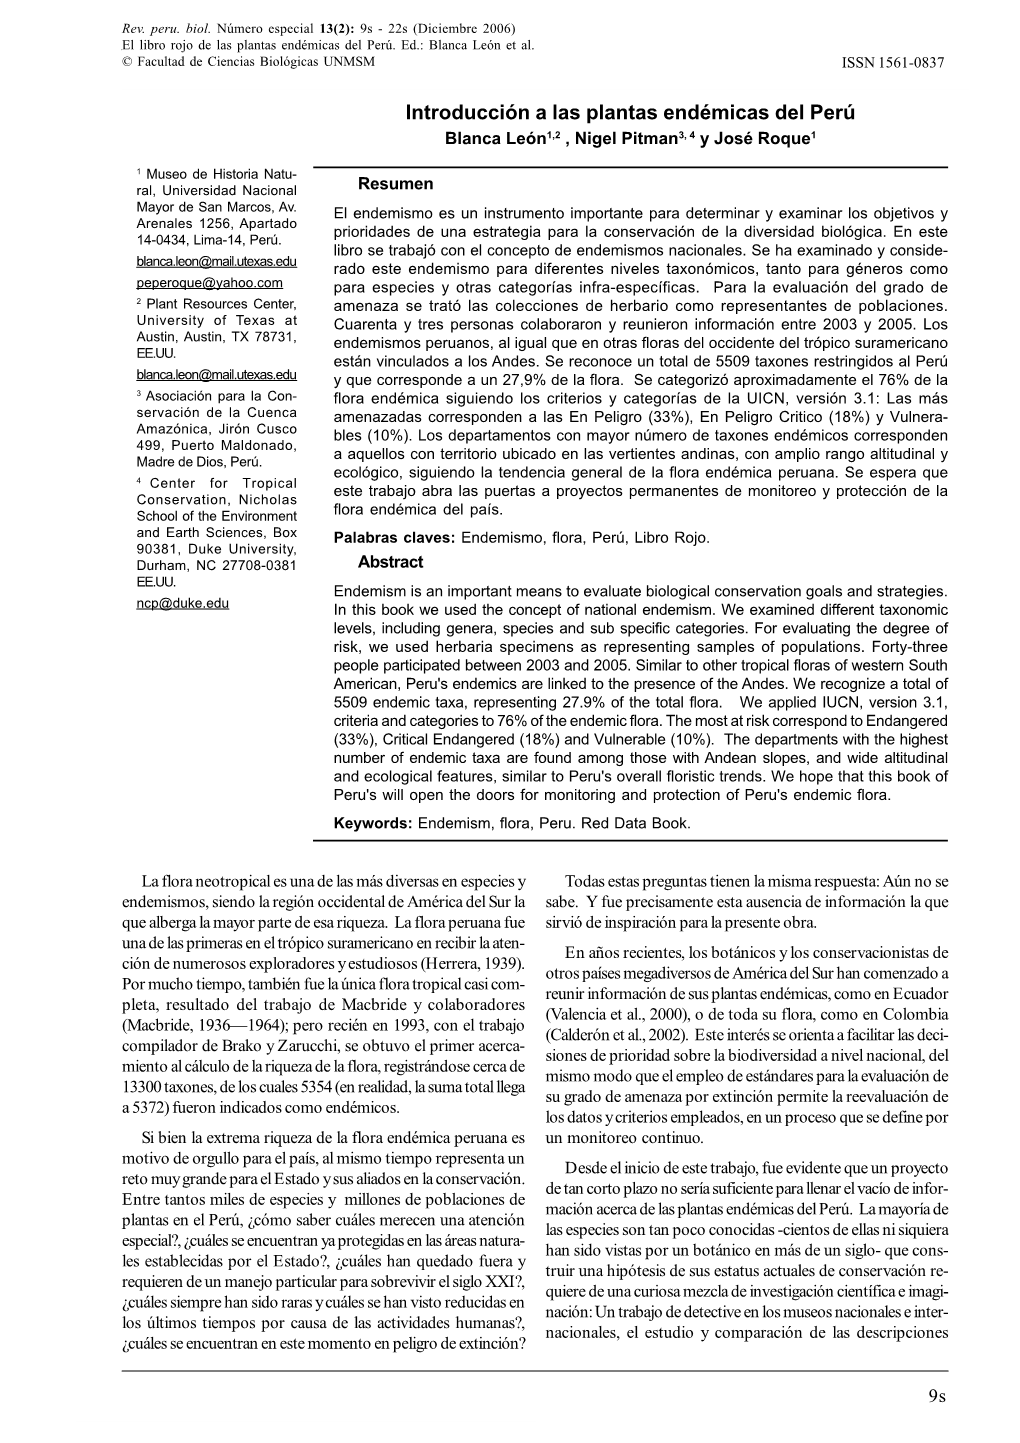 INTRODUCCIÓN a LAS PLANTAS ENDÉMICAS DEL PERÚ © Facultad De Ciencias Biológicas UNMSM ISSN 1561-0837